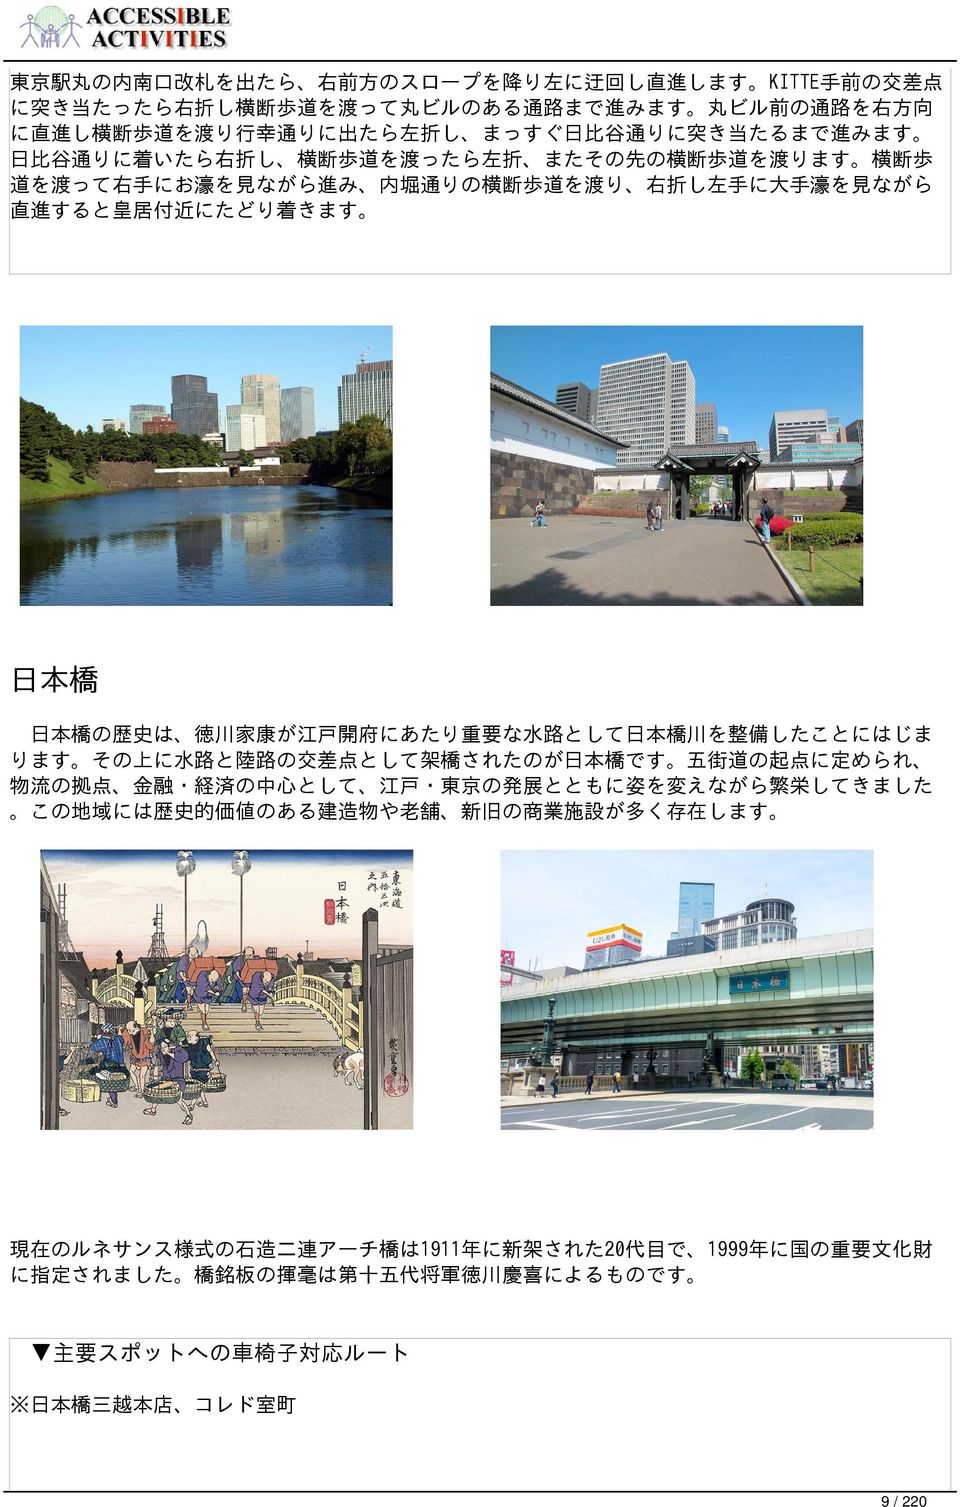 日本橋の歴史は 徳川家康が江戸開府にあたり重要な水路として日本橋川を整備したことにはじま ります その上に水路と陸路の交差点として架橋されたのが日本橋です 五街道の起点に定められ 物流の拠点 金融 経済の中心として 江戸 東京の発展とともに姿を変えながら繁栄してきました